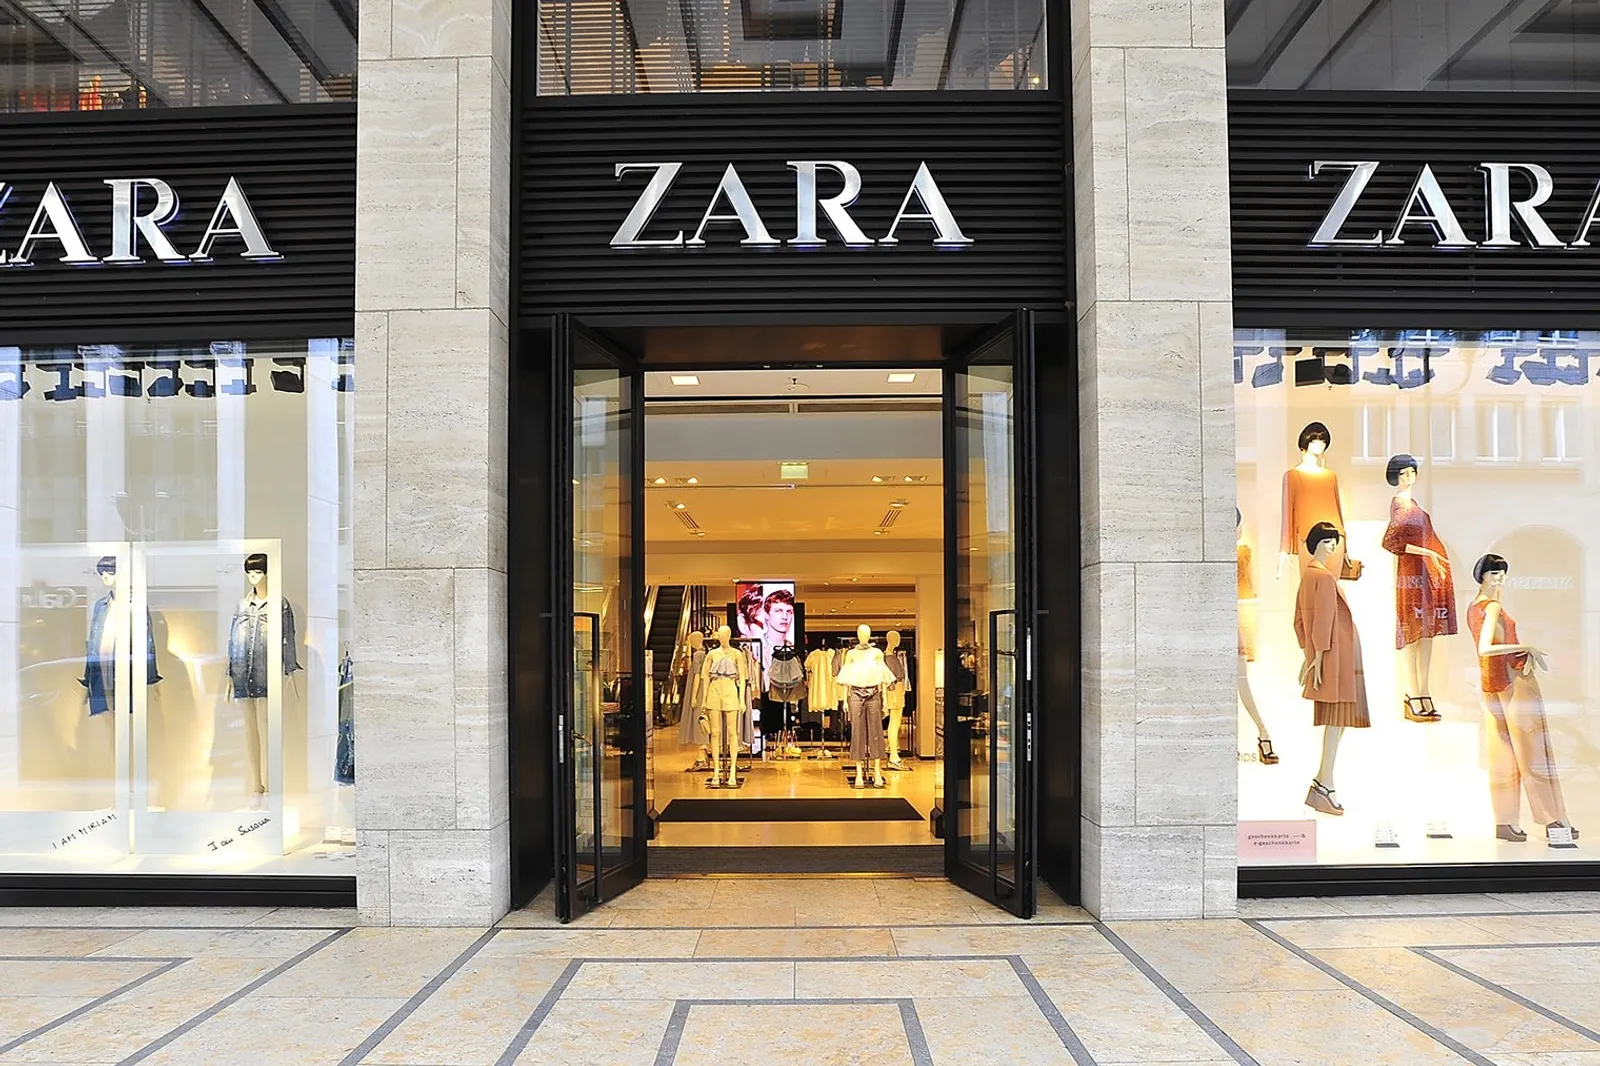 Dampak Virus Corona, Zara akan Tutup 1.200 Toko di Dunia